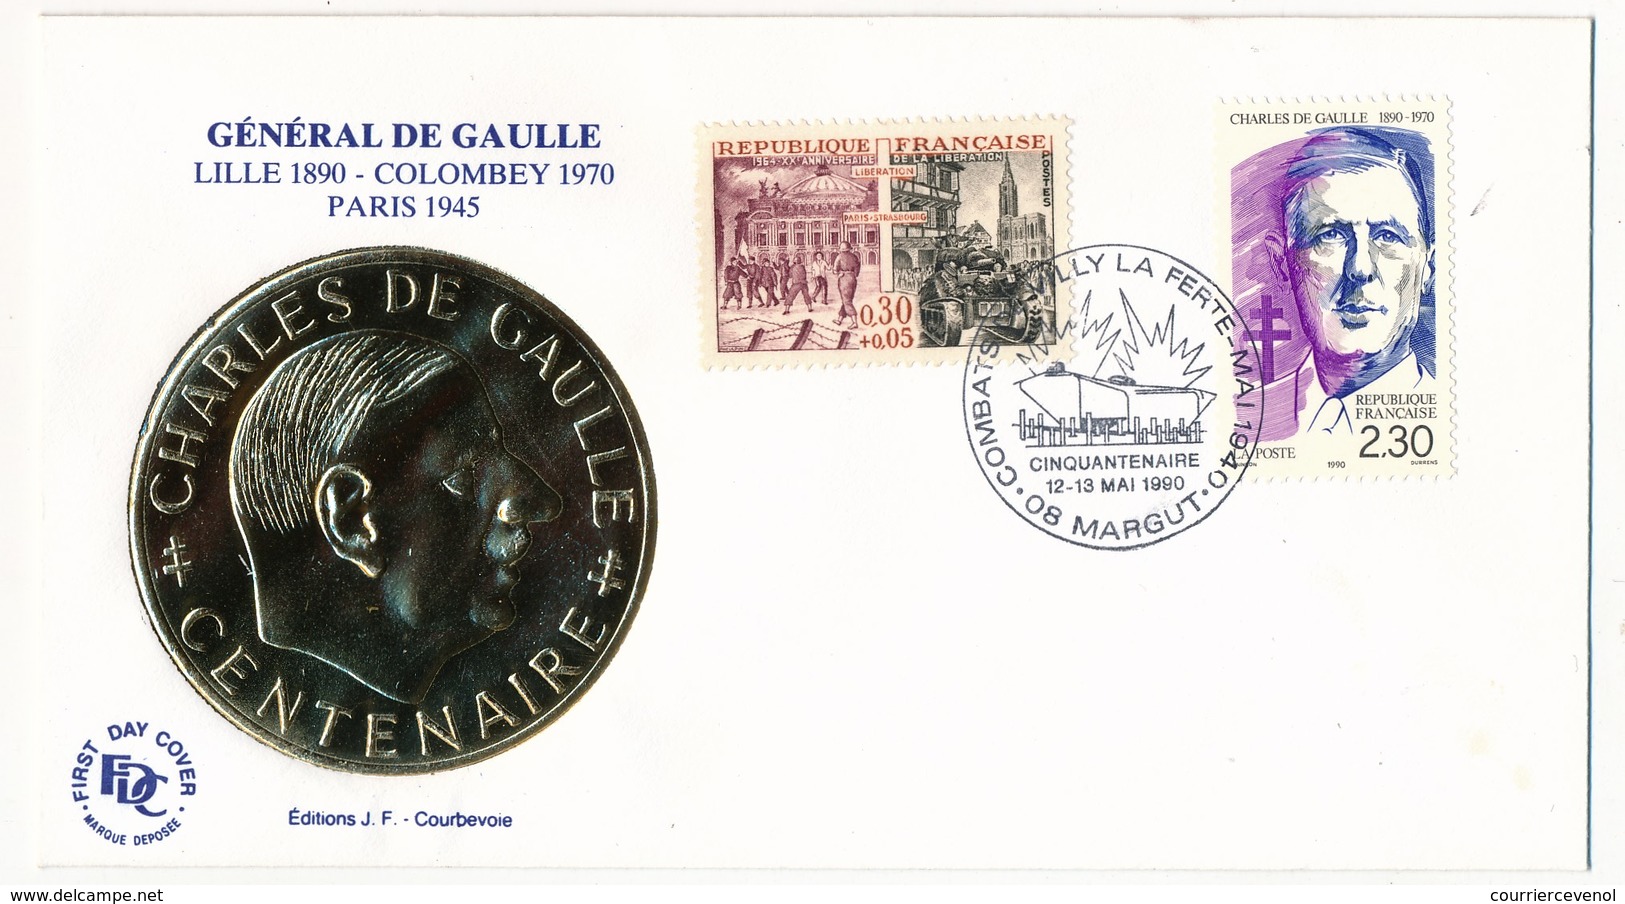 FRANCE - Enveloppe - Cachet Temporaire "Combats De Villy La Ferté - Cinquantenaire" - 08 MARGUT  - 12/13.6.1990 - De Gaulle (Generaal)